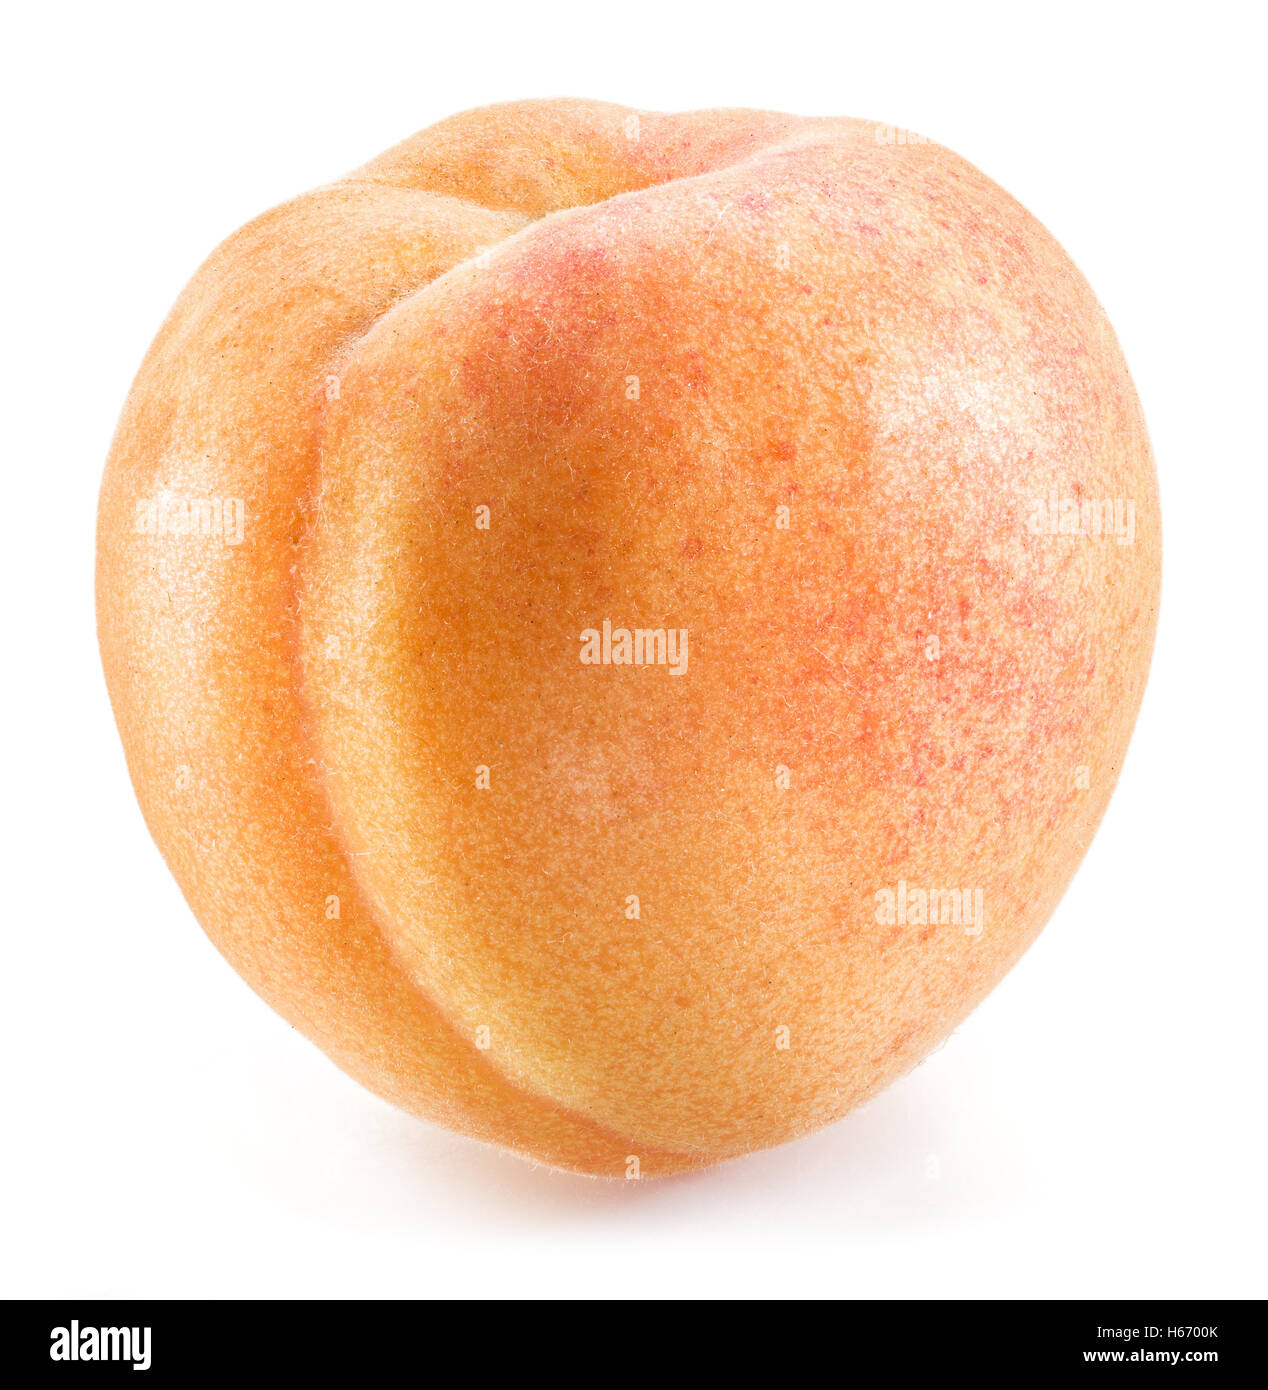 Aprikose Frucht auf dem weißen Hintergrund. Stockfoto